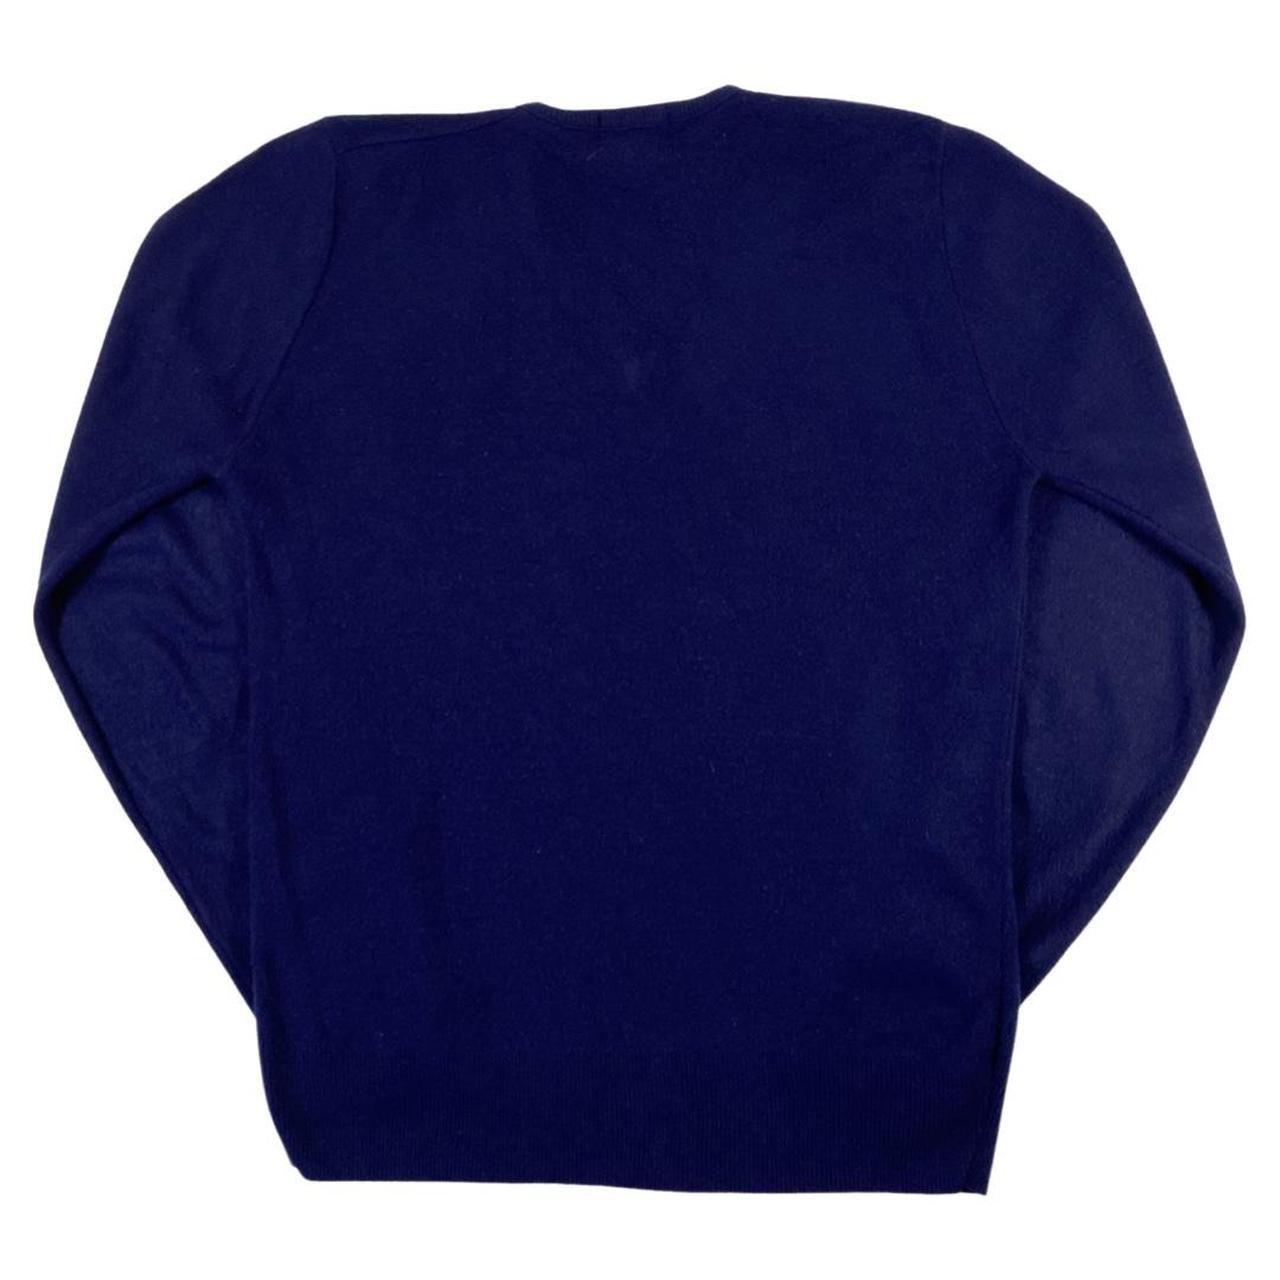 Lacoste IZOD label cashmere V neck cardigan jumper... - Depop